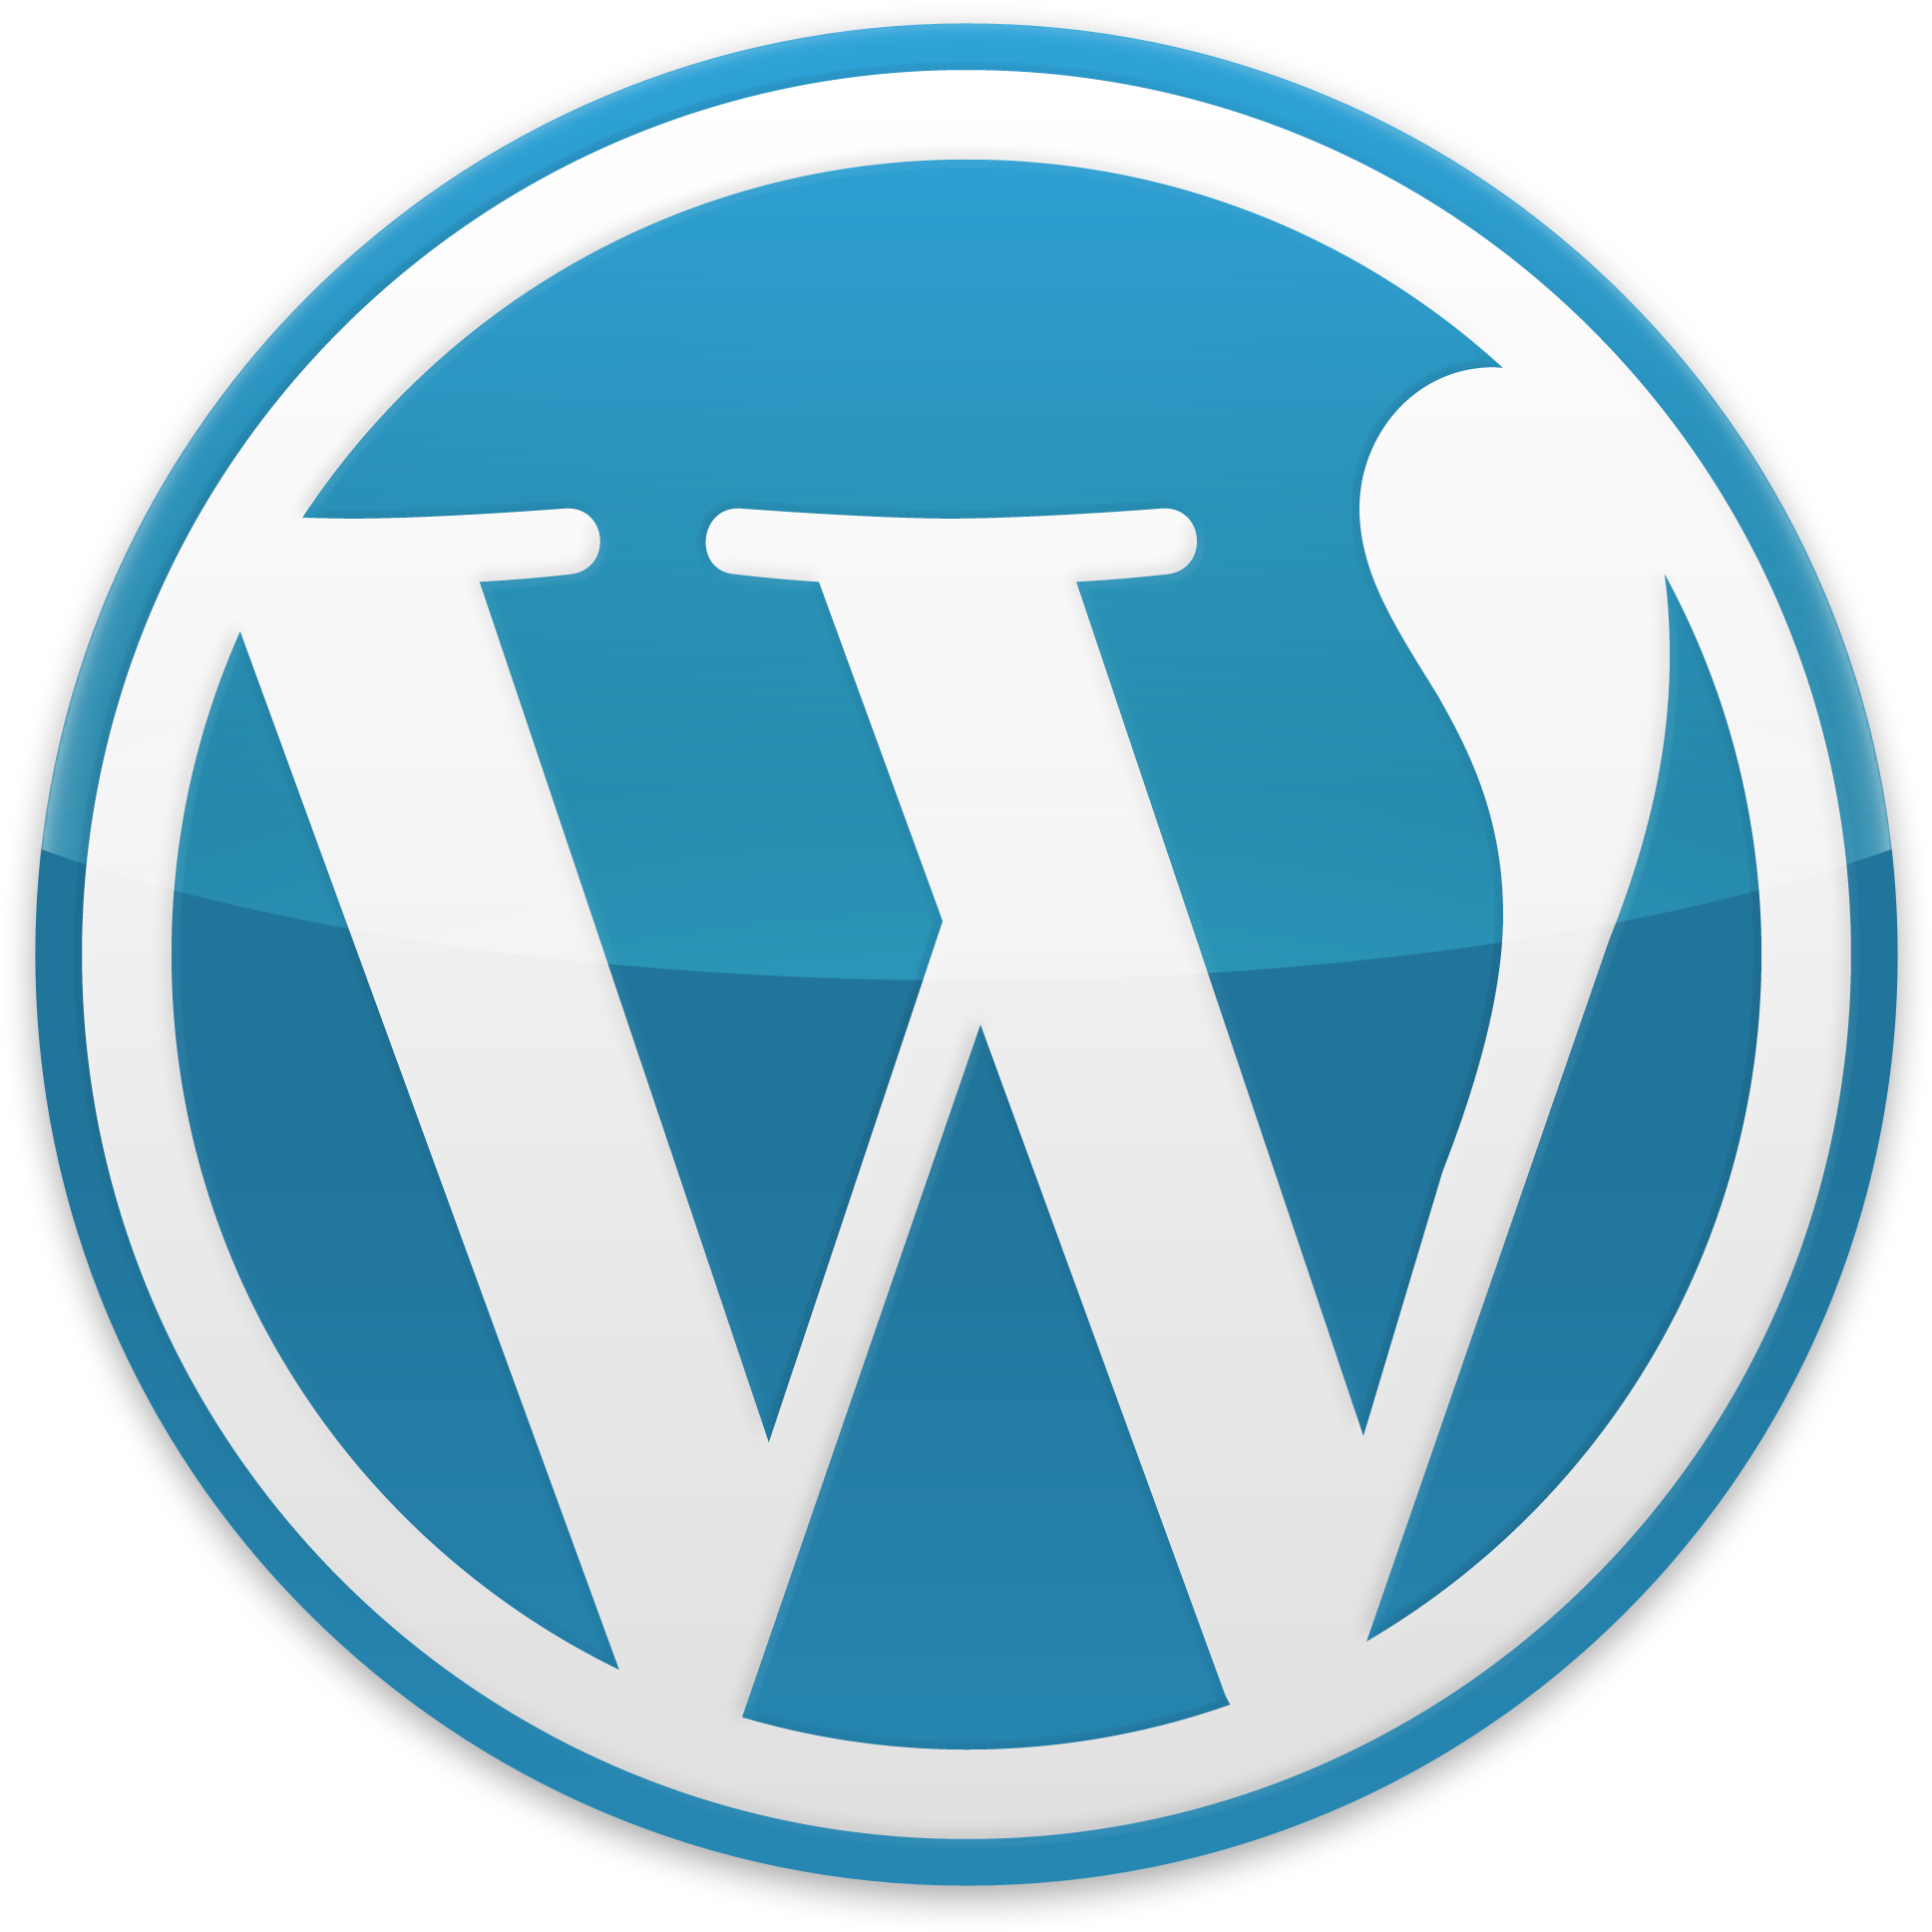 Wordpress Logo Icon